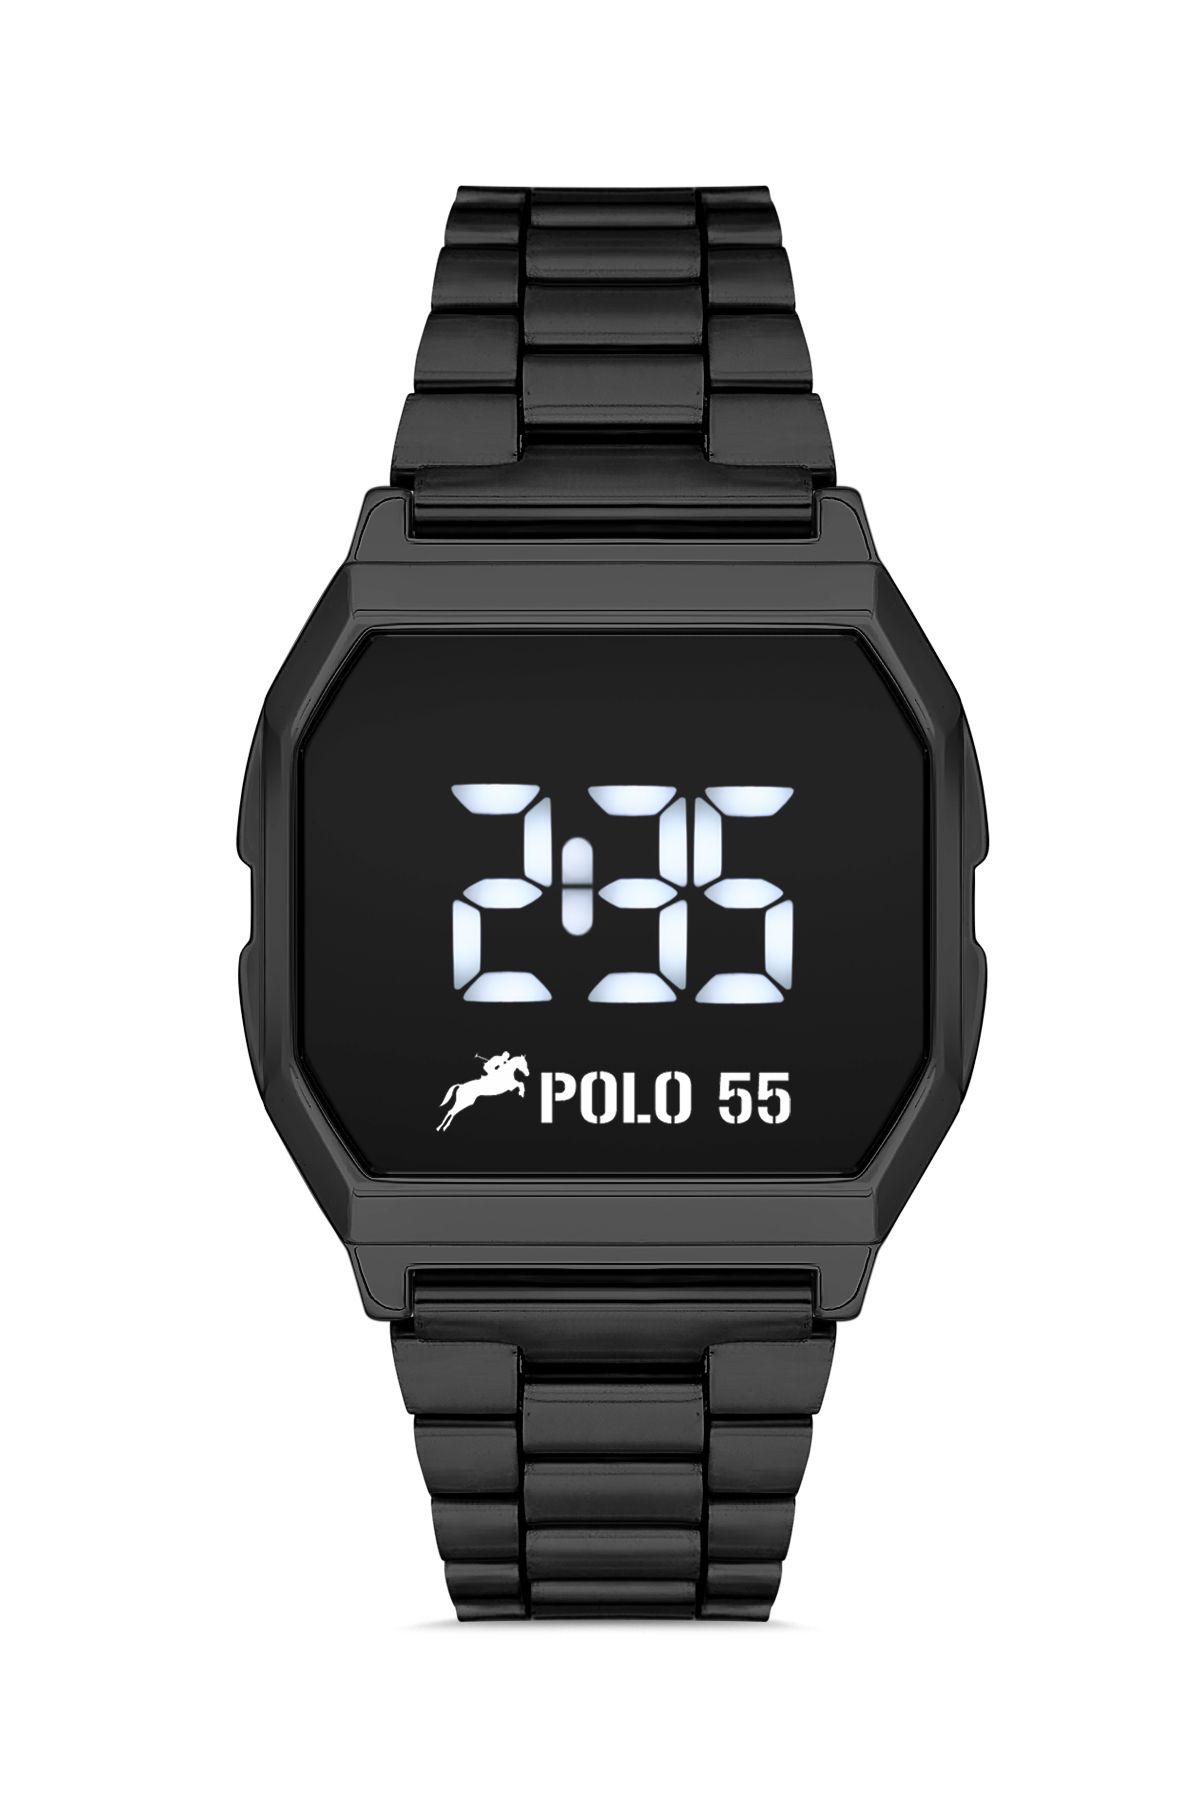 Polo55 Siyah Zamansız Tasarım Dokunmatik Dijital Metal Kordon Retro Kadın Kol Saati